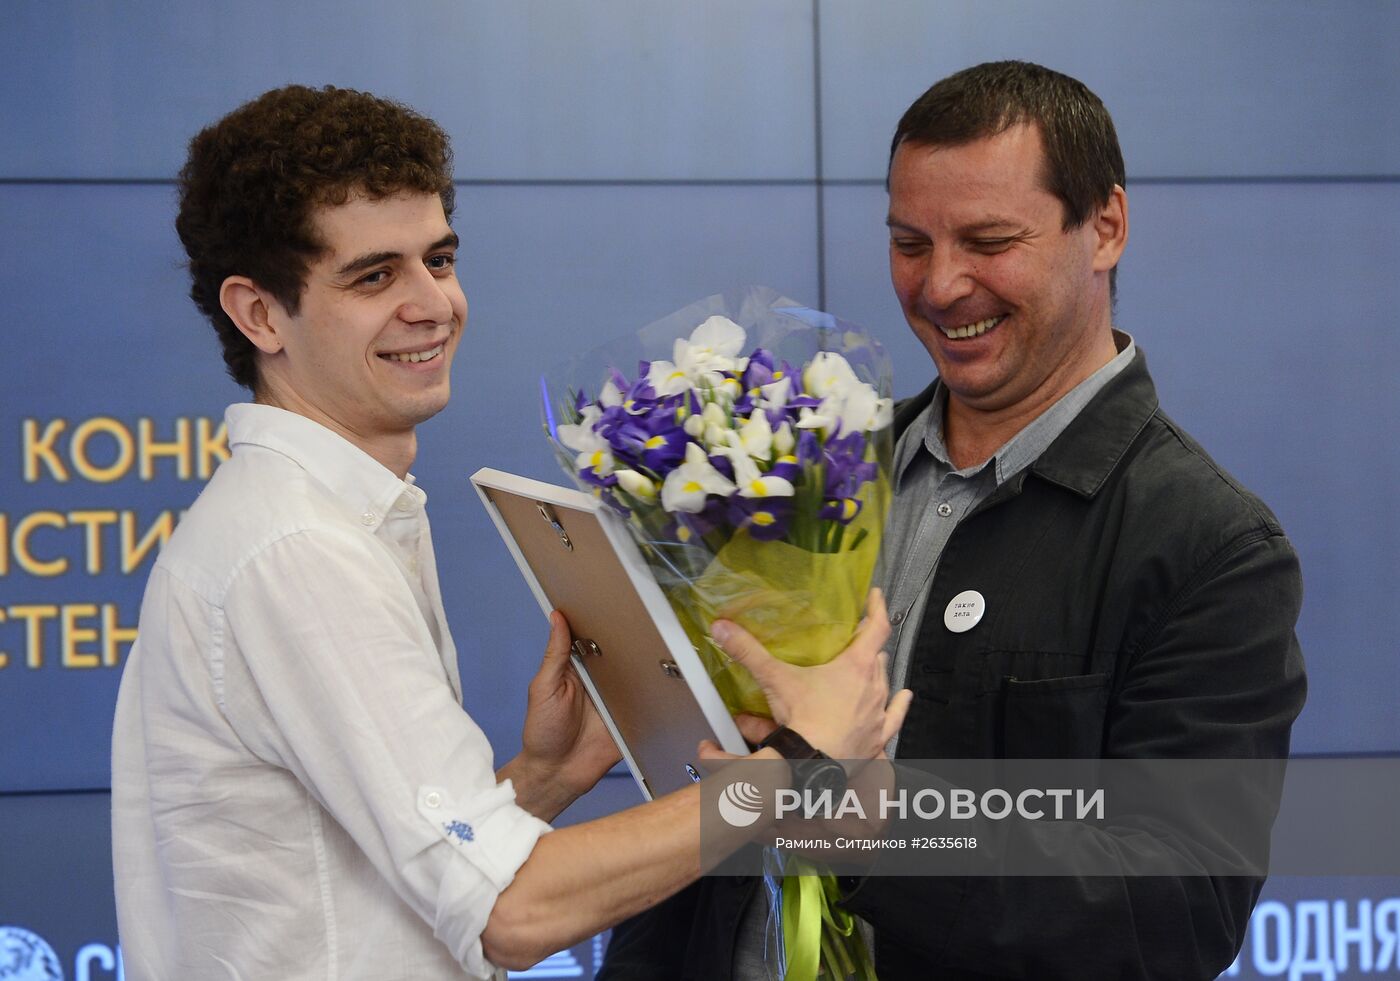 Церемония награждения победителя и призеров Международного конкурса фотожурналистики имени Андрея Стенина